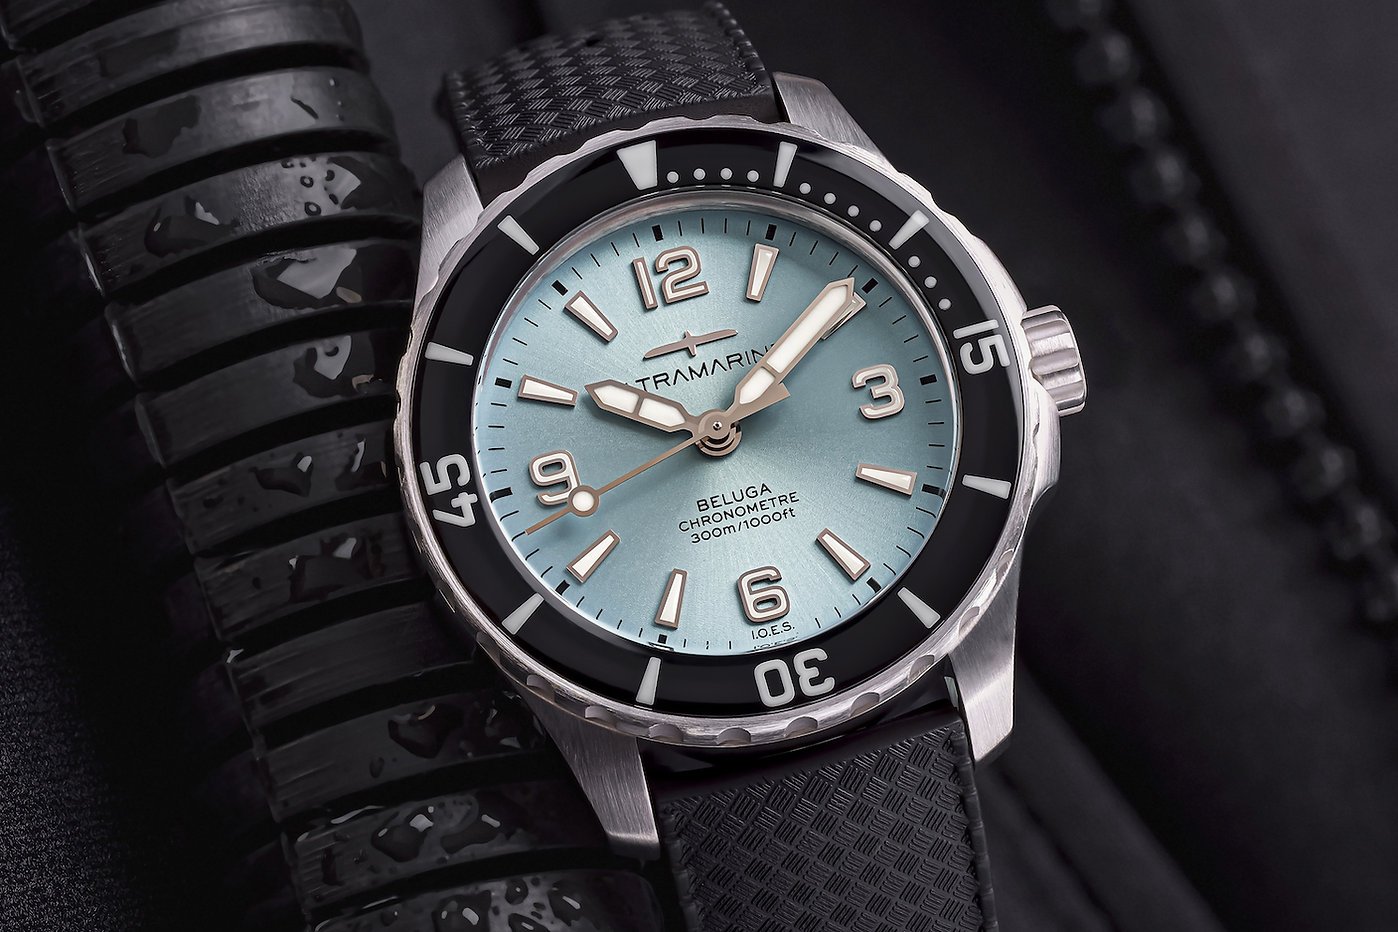 Ultramarine Beluga Dive watch - Kenissi Automatic COSC